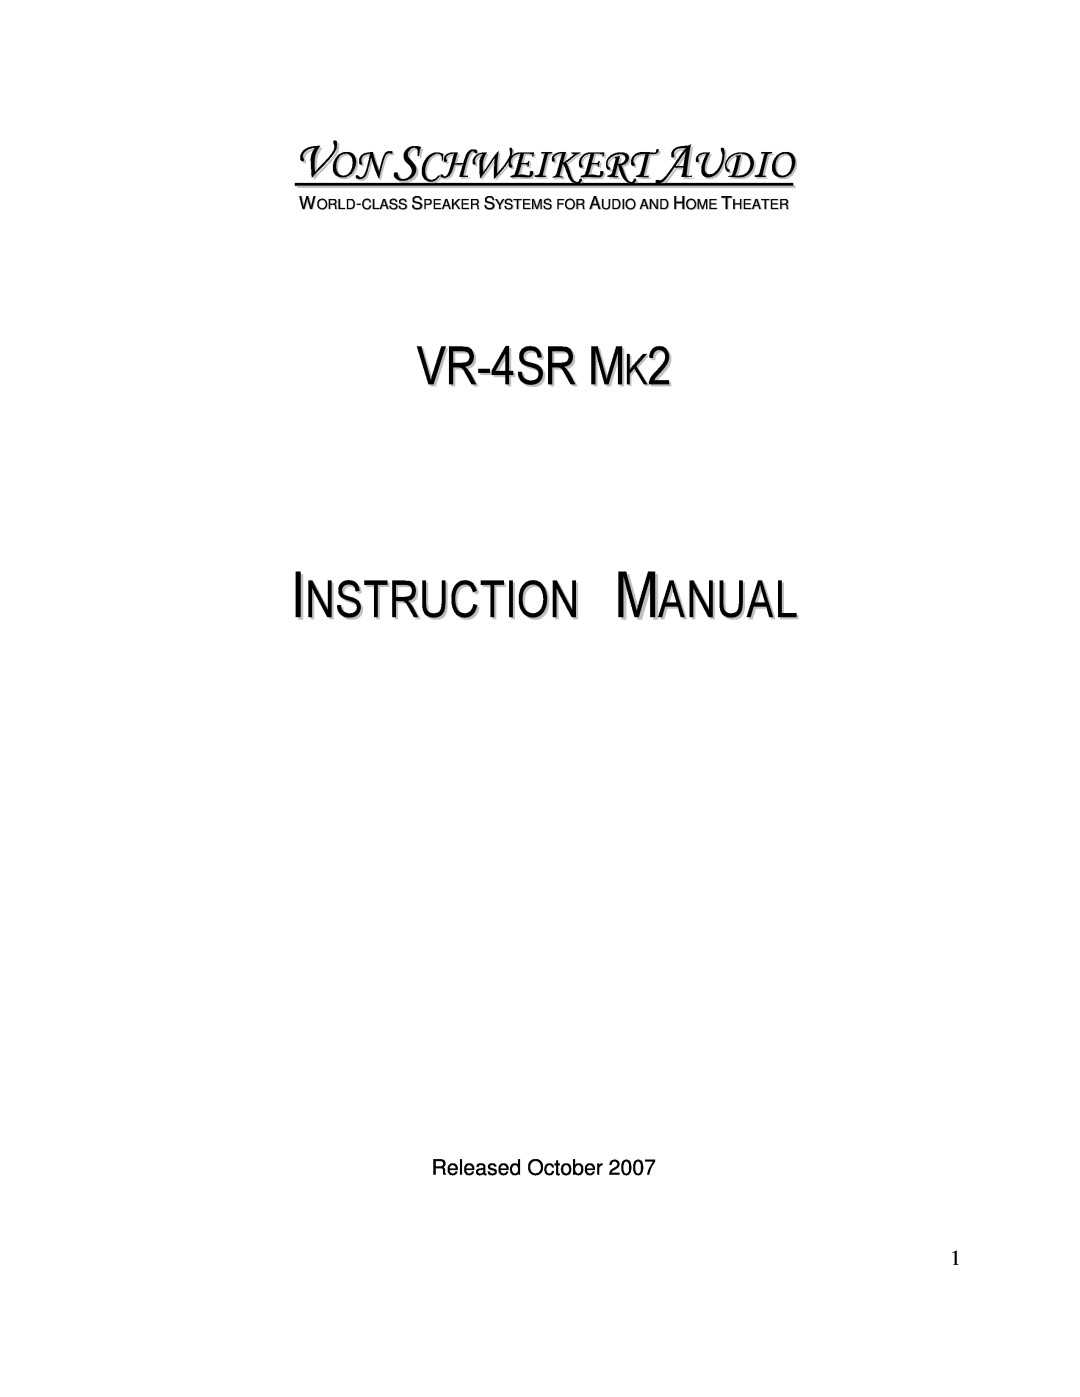 Von Schweikert Audio VR-4SR MK2 manual VR-4SRMK2, Von Schweikert Audio, Released October 